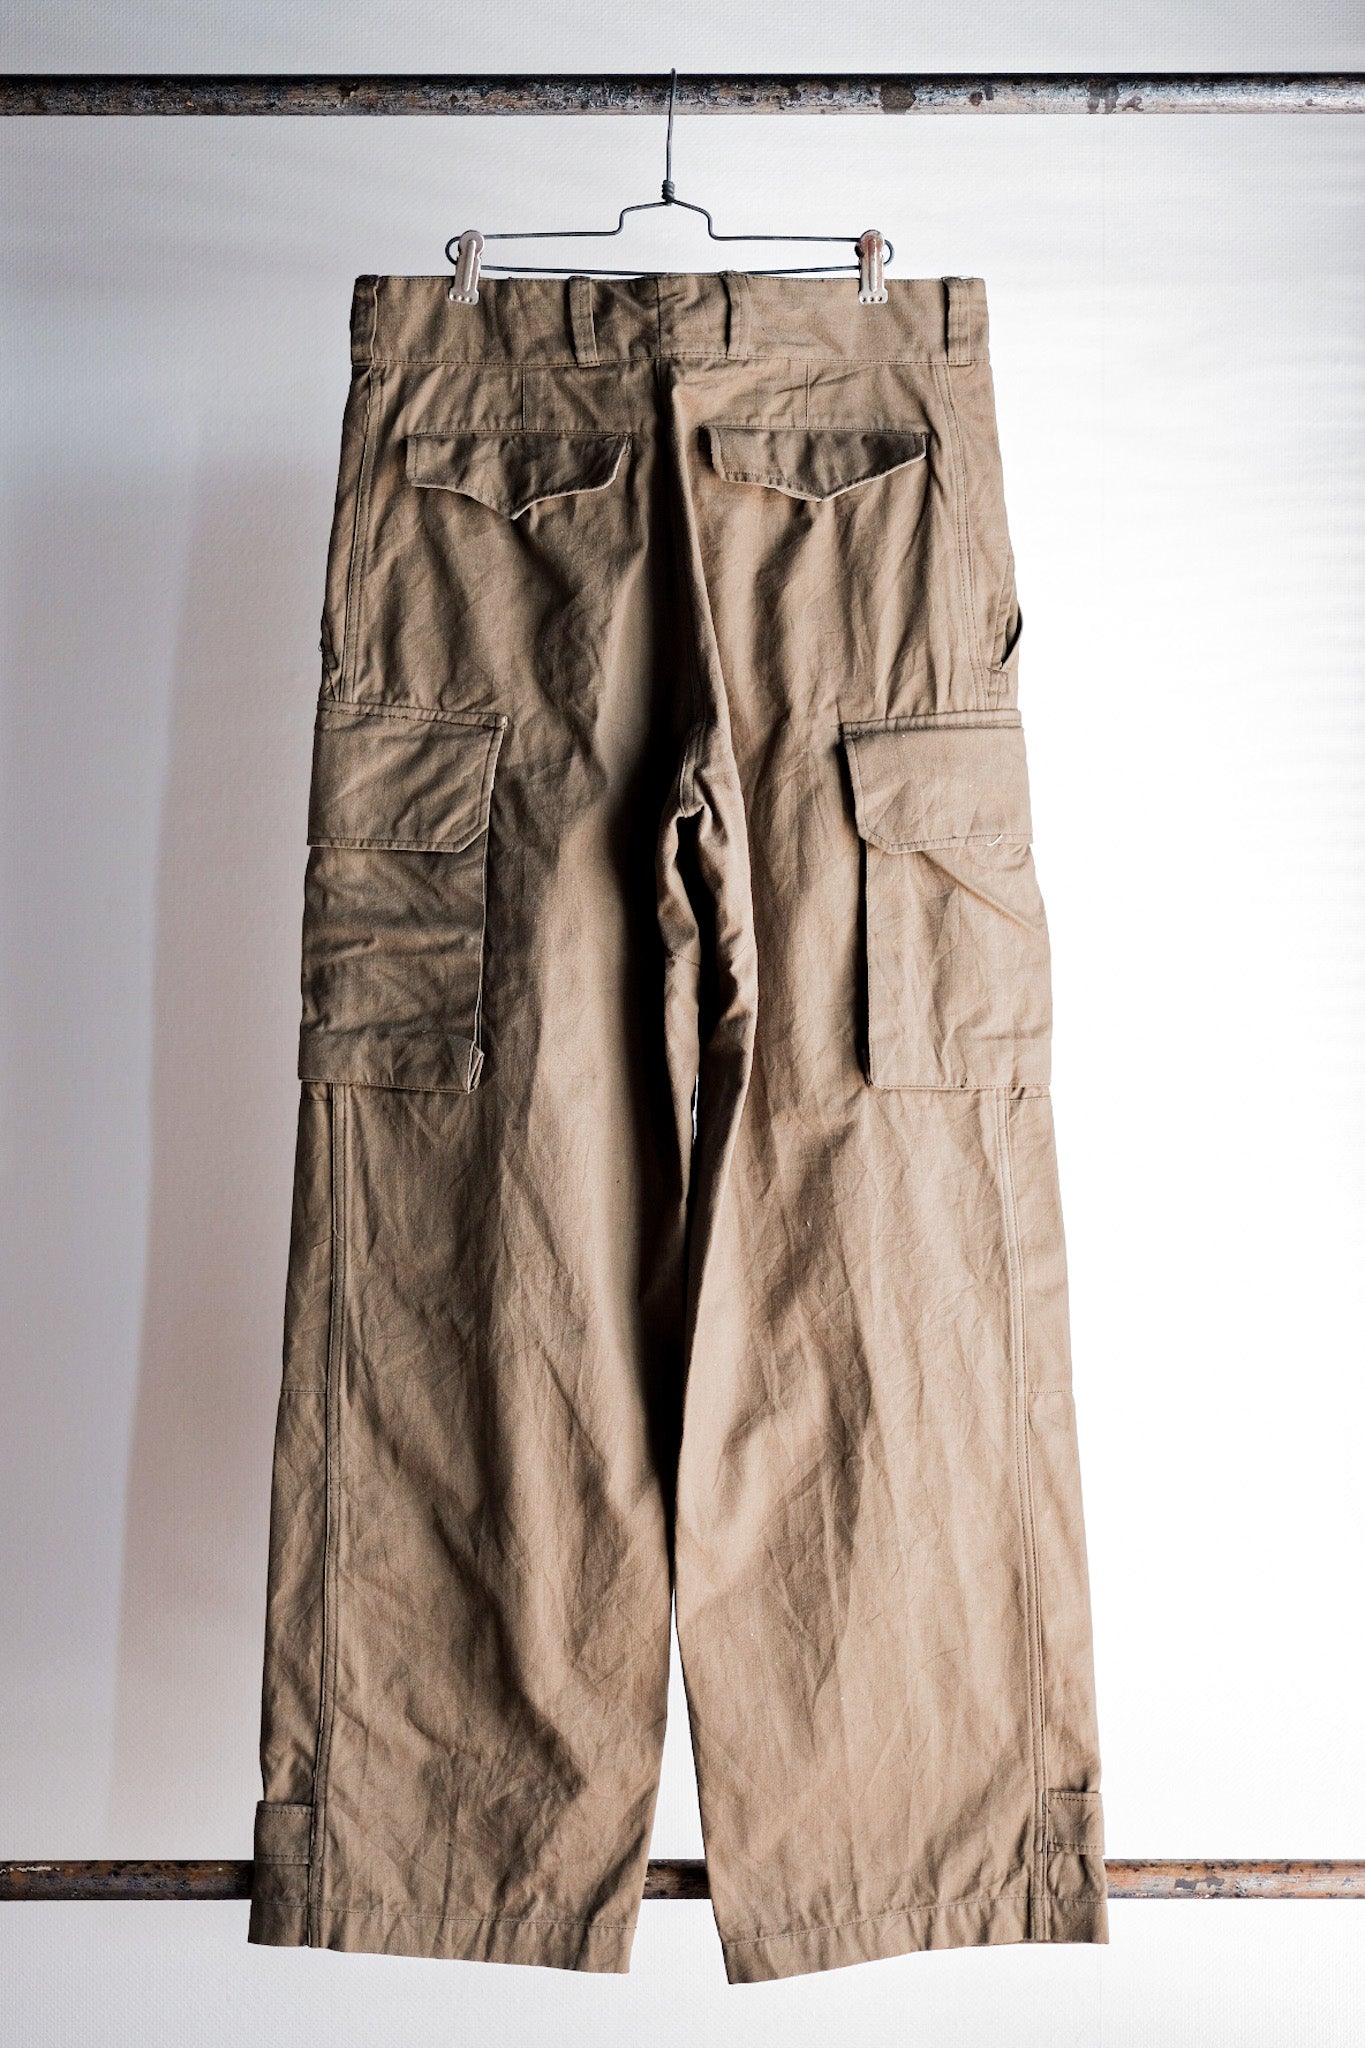 [〜50年代]法國陸軍M47野外褲子的大小。33“死股”